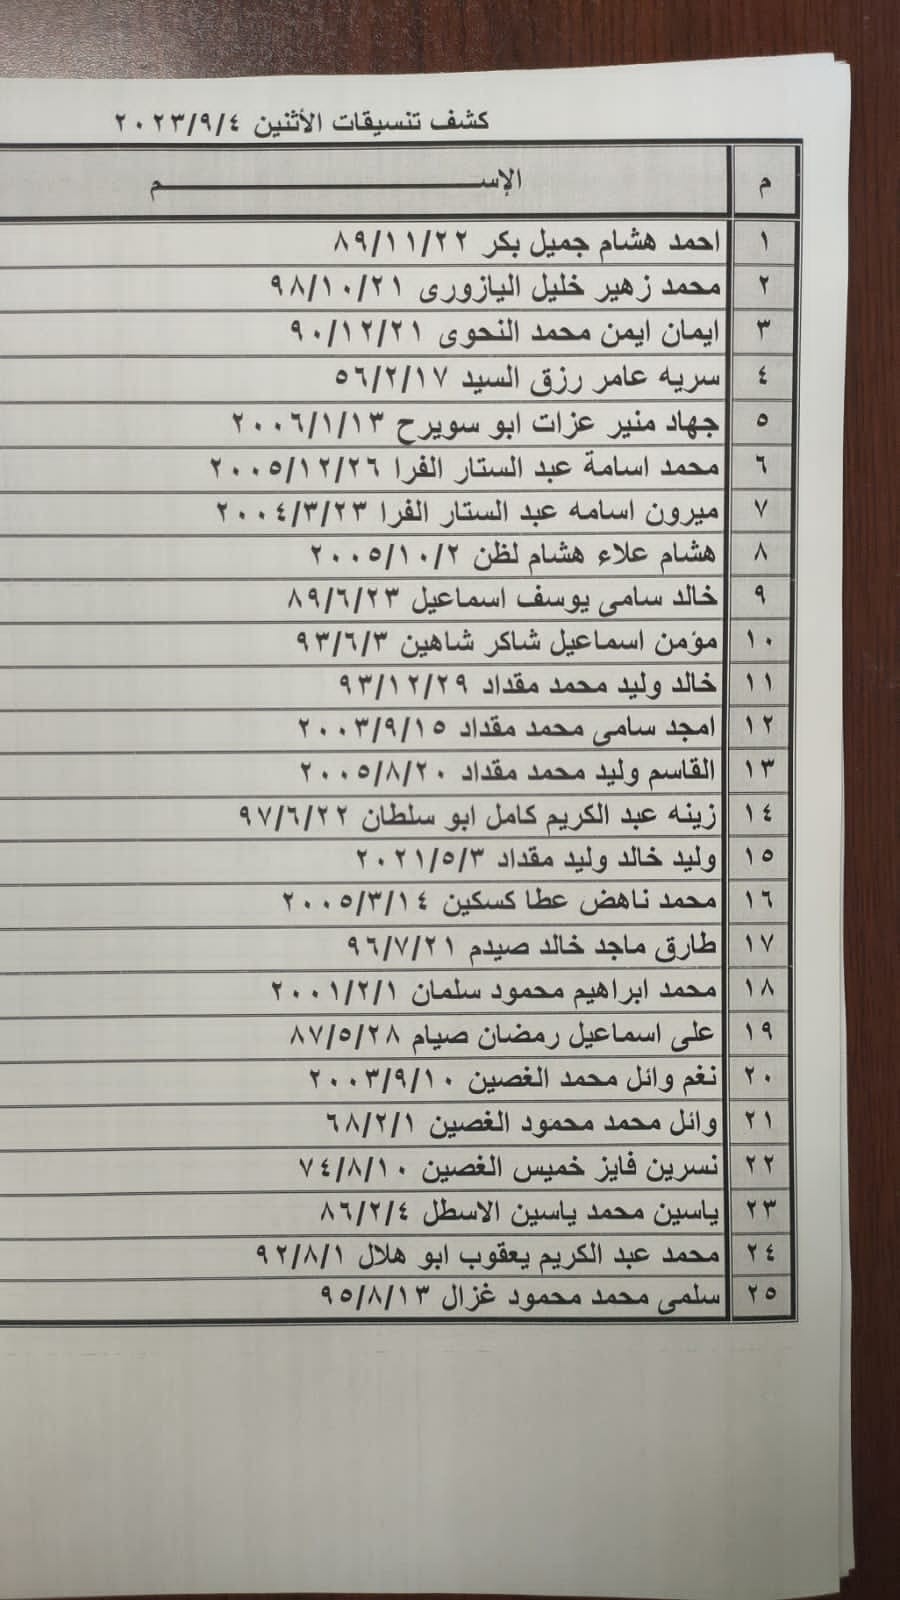 بالأسماء: كشف "التنسيقات المصرية" للسفر عبر معبر رفح الإثنين 4 سبتمبر 2023